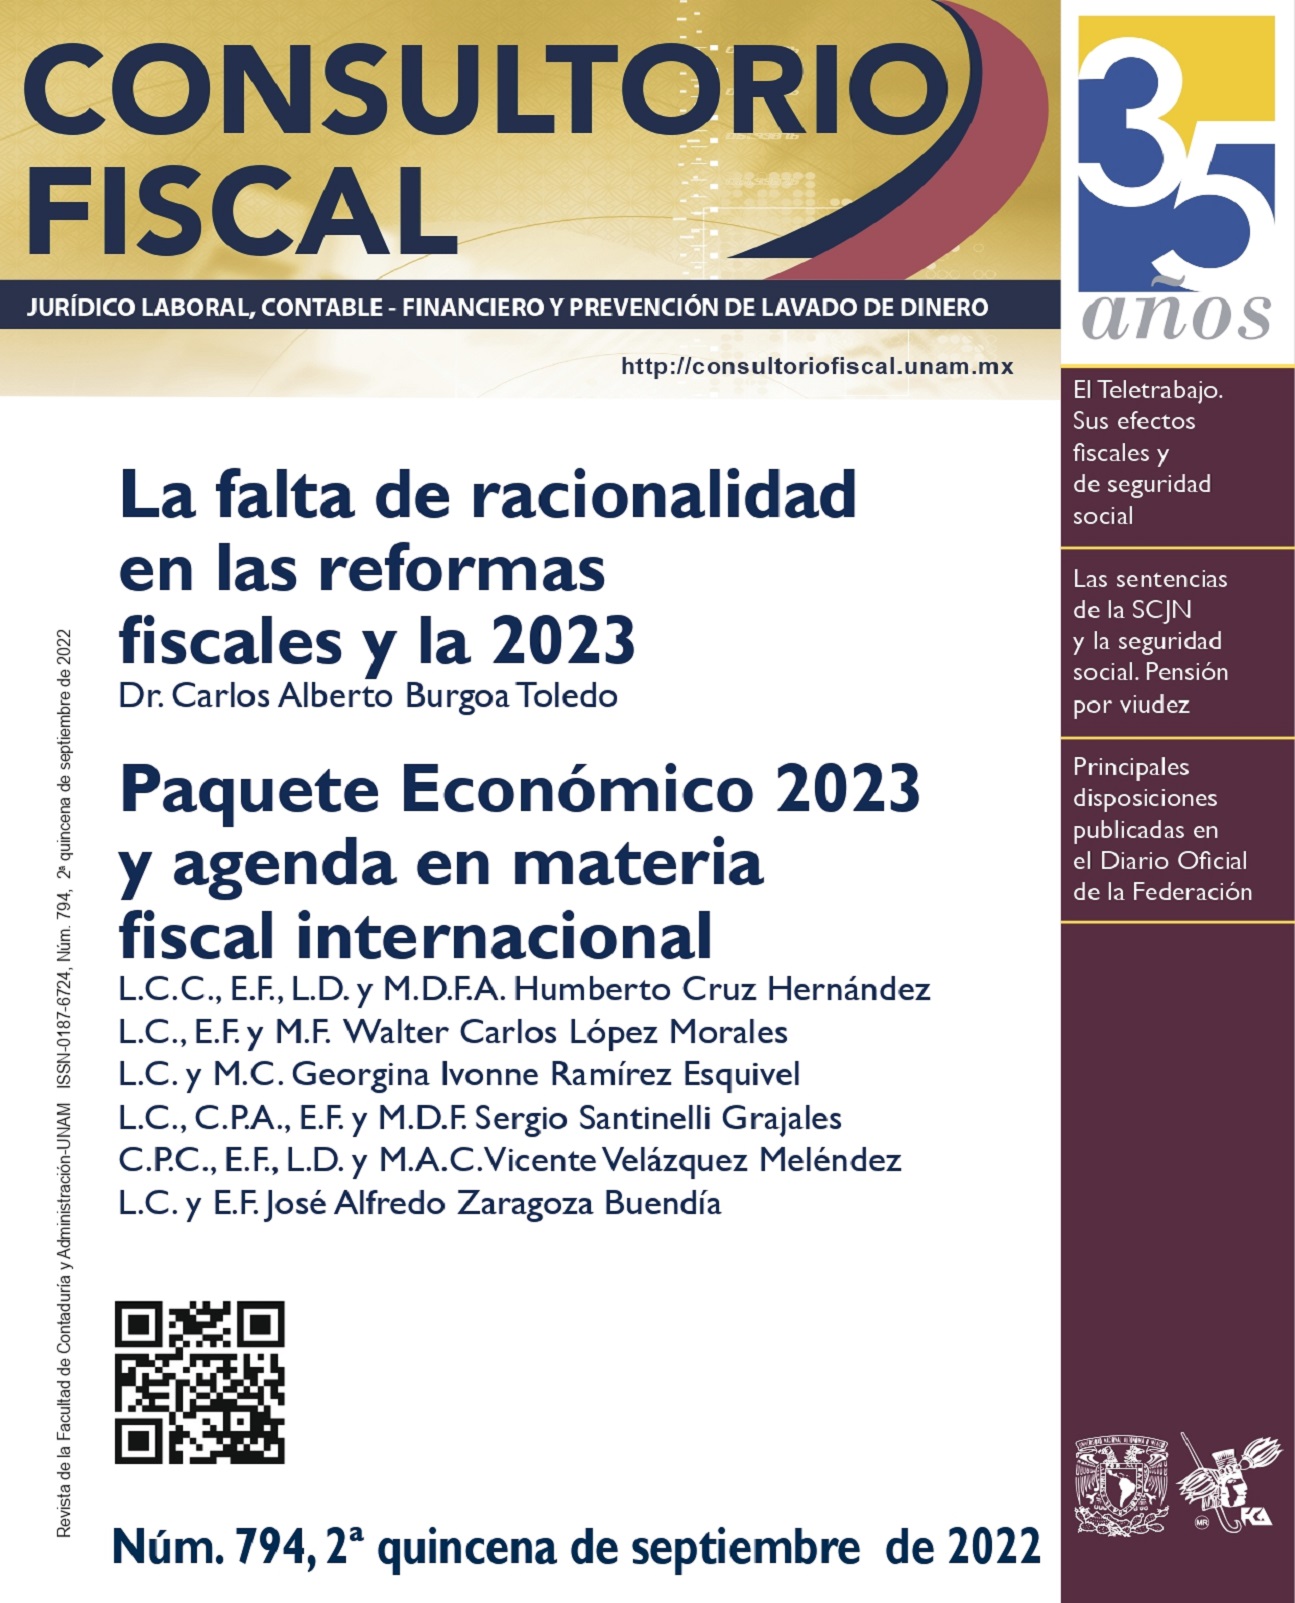 La falta de racionalidad en las reformas fiscales y la 2023